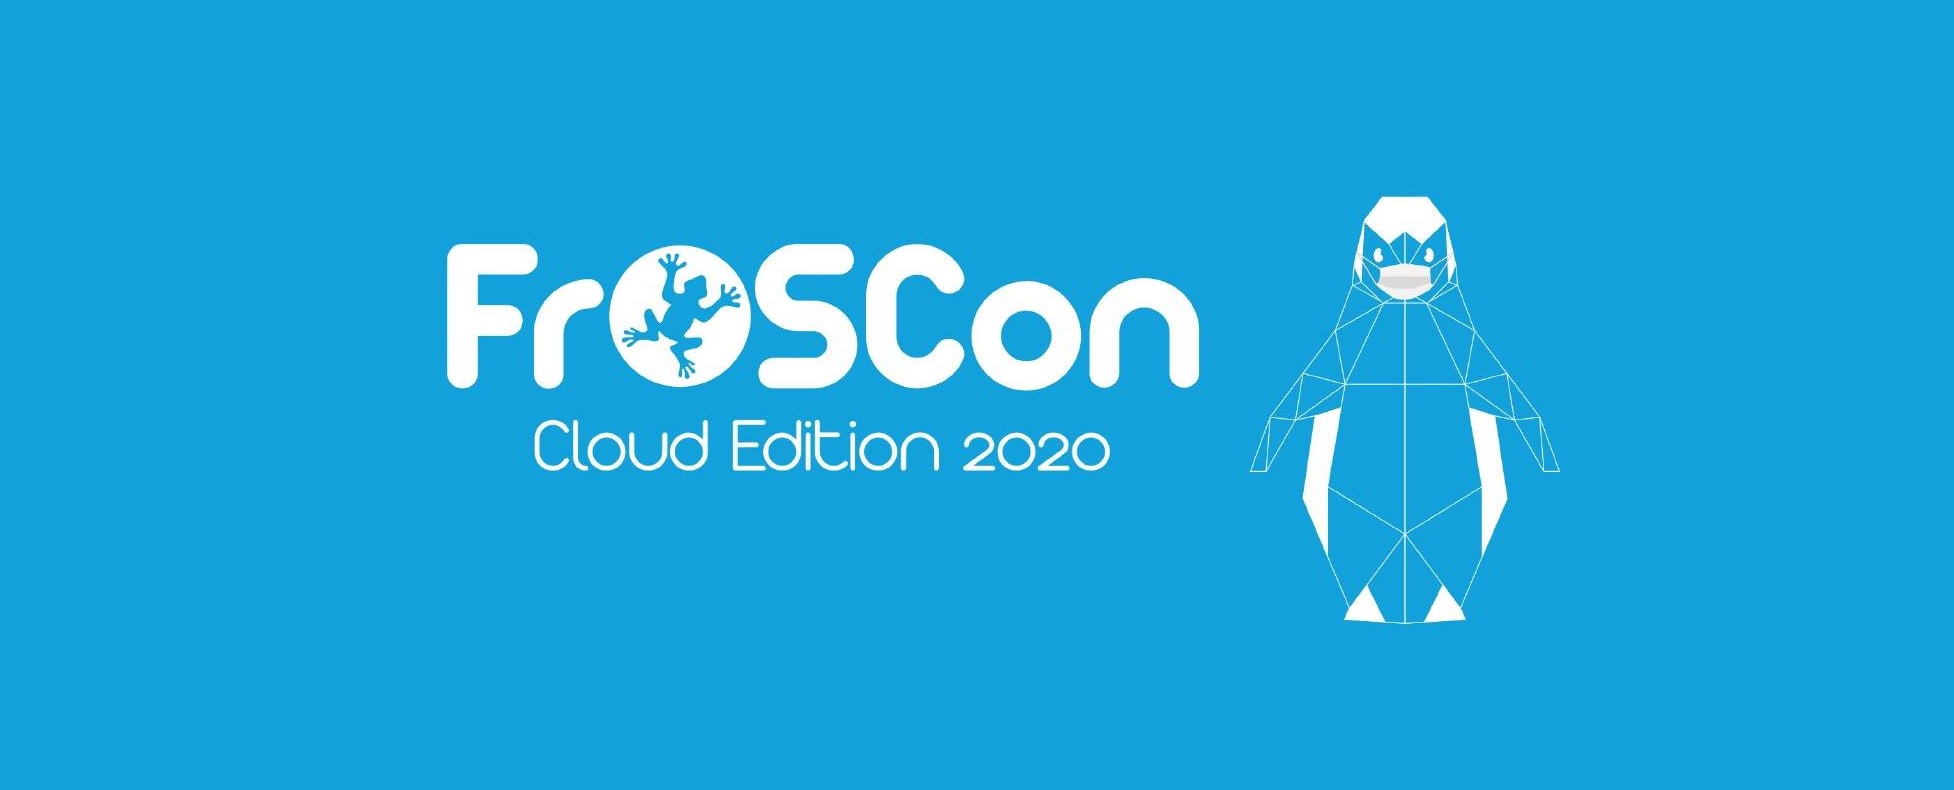 FrOSCon Cloudedition Logo